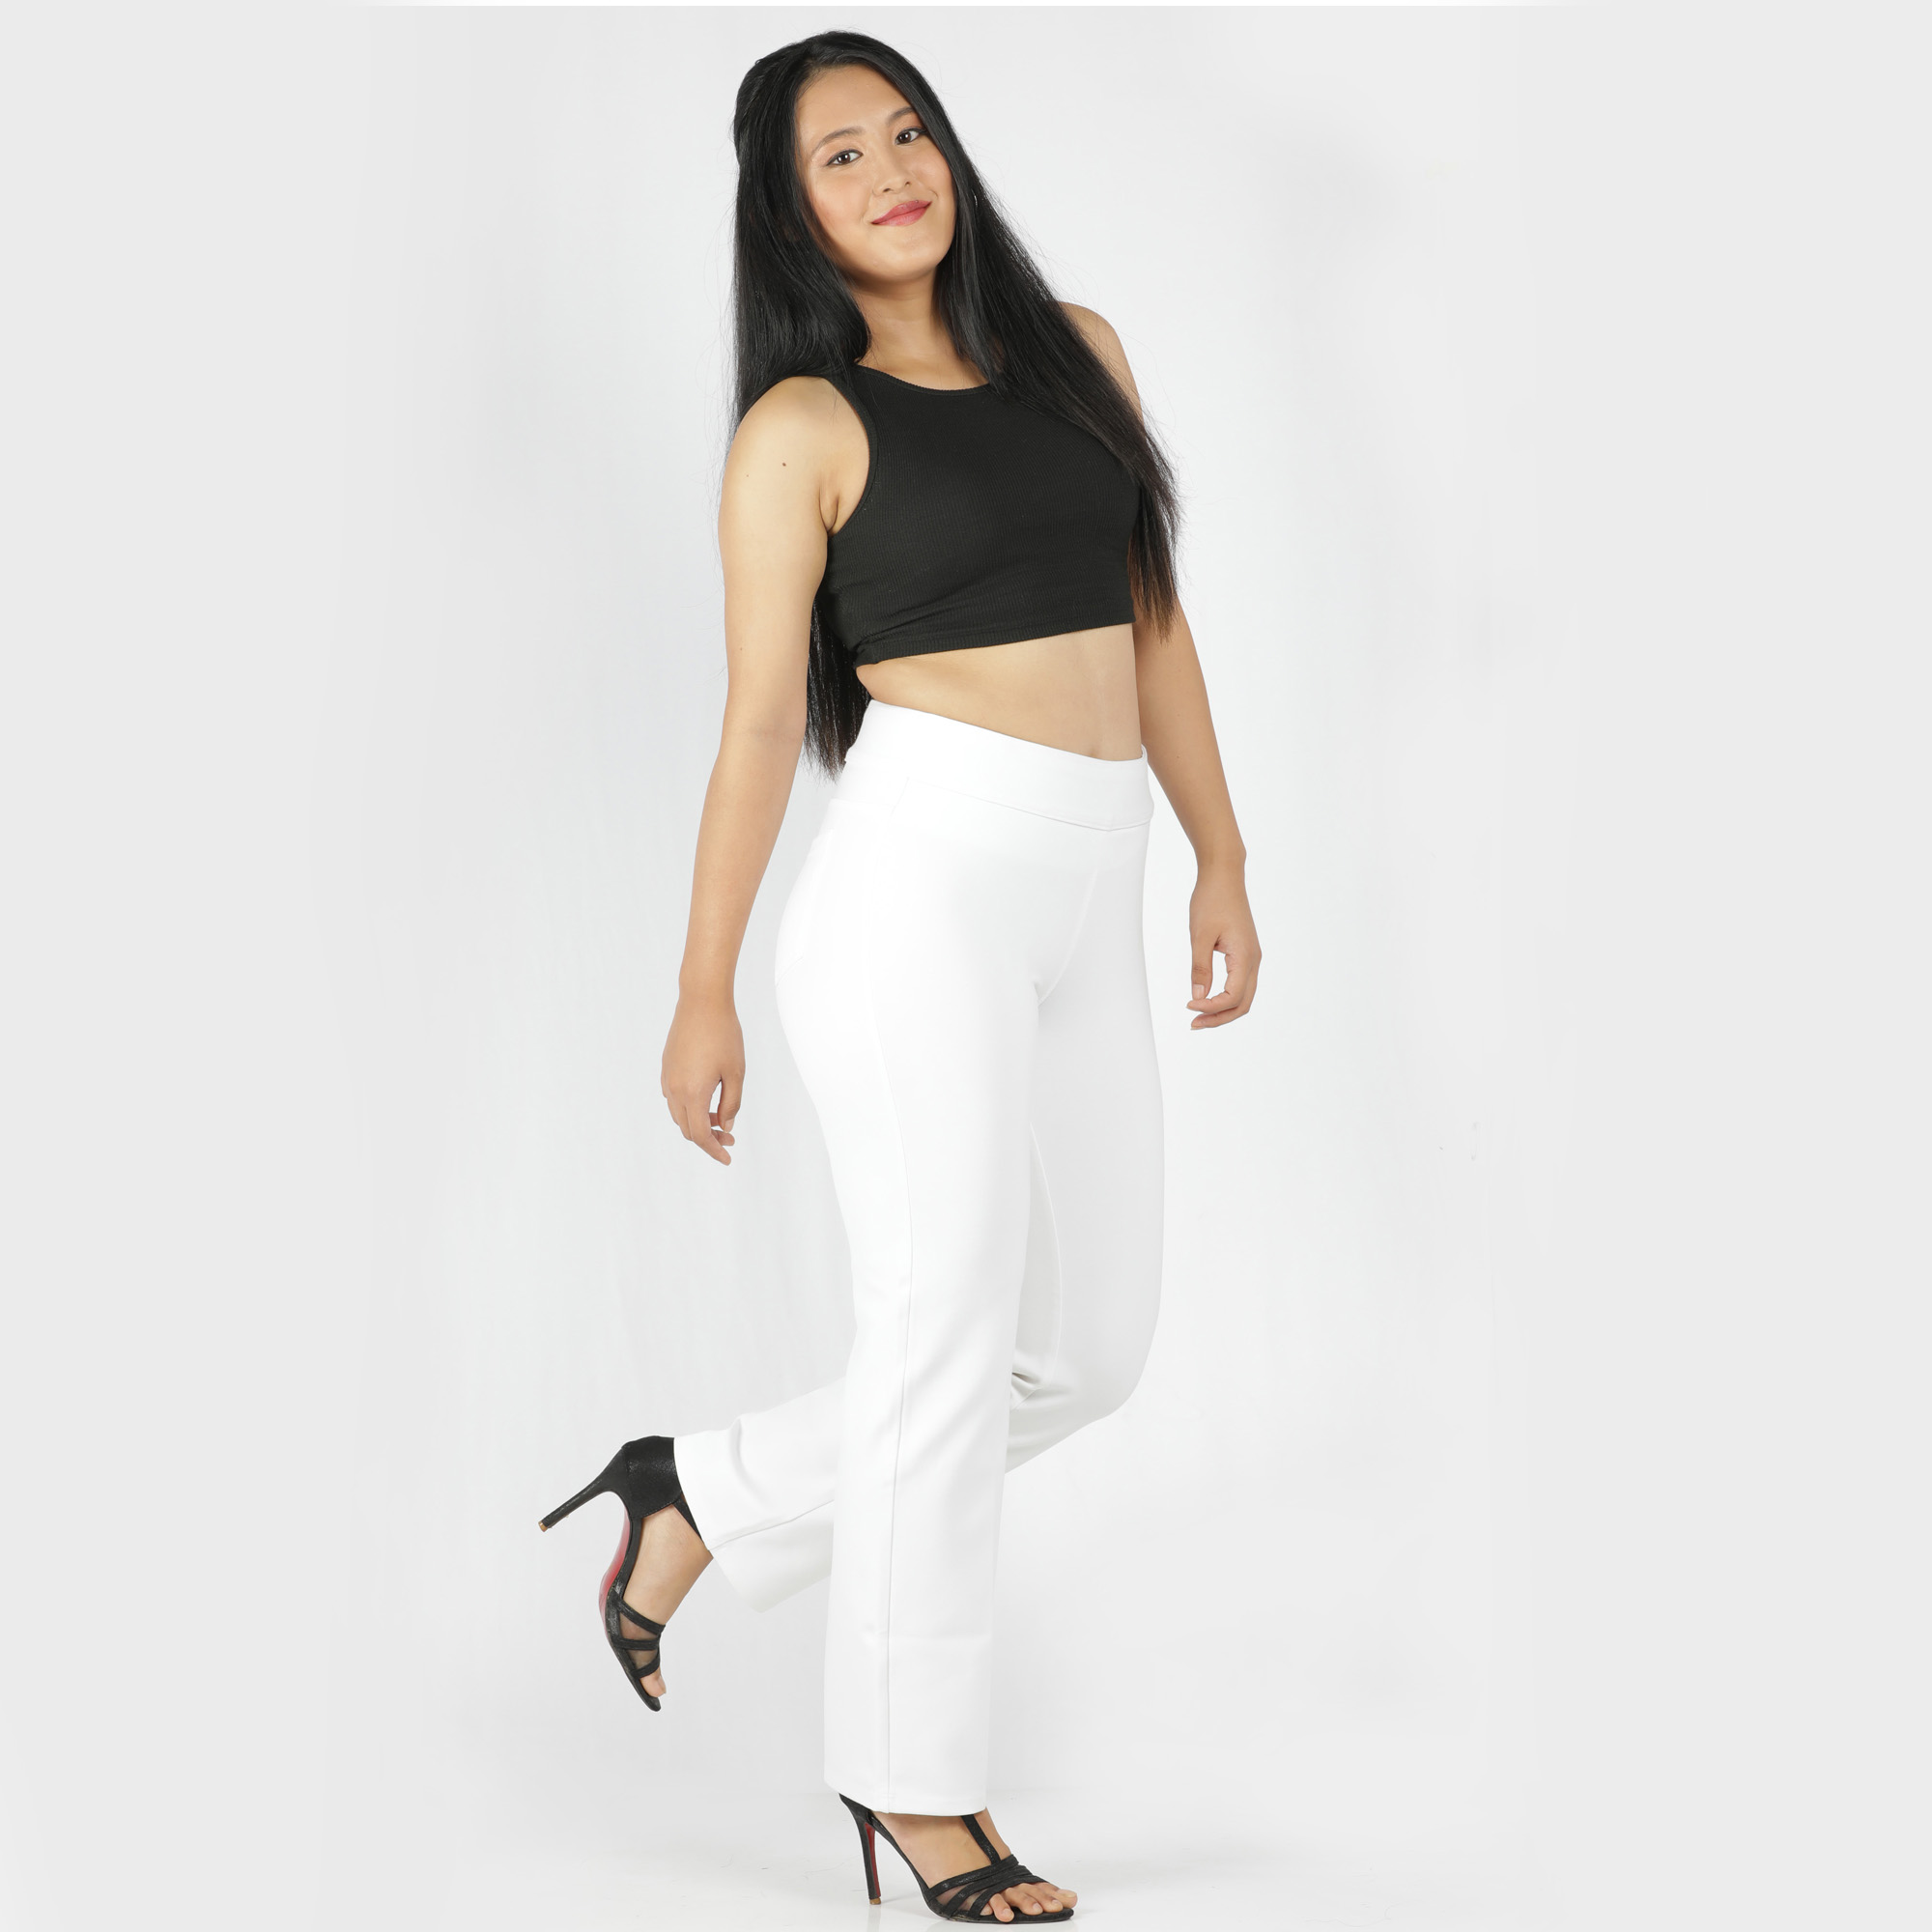 White pants for women - Tummy tucker straight leg-2 back pockets - Belore  Slims